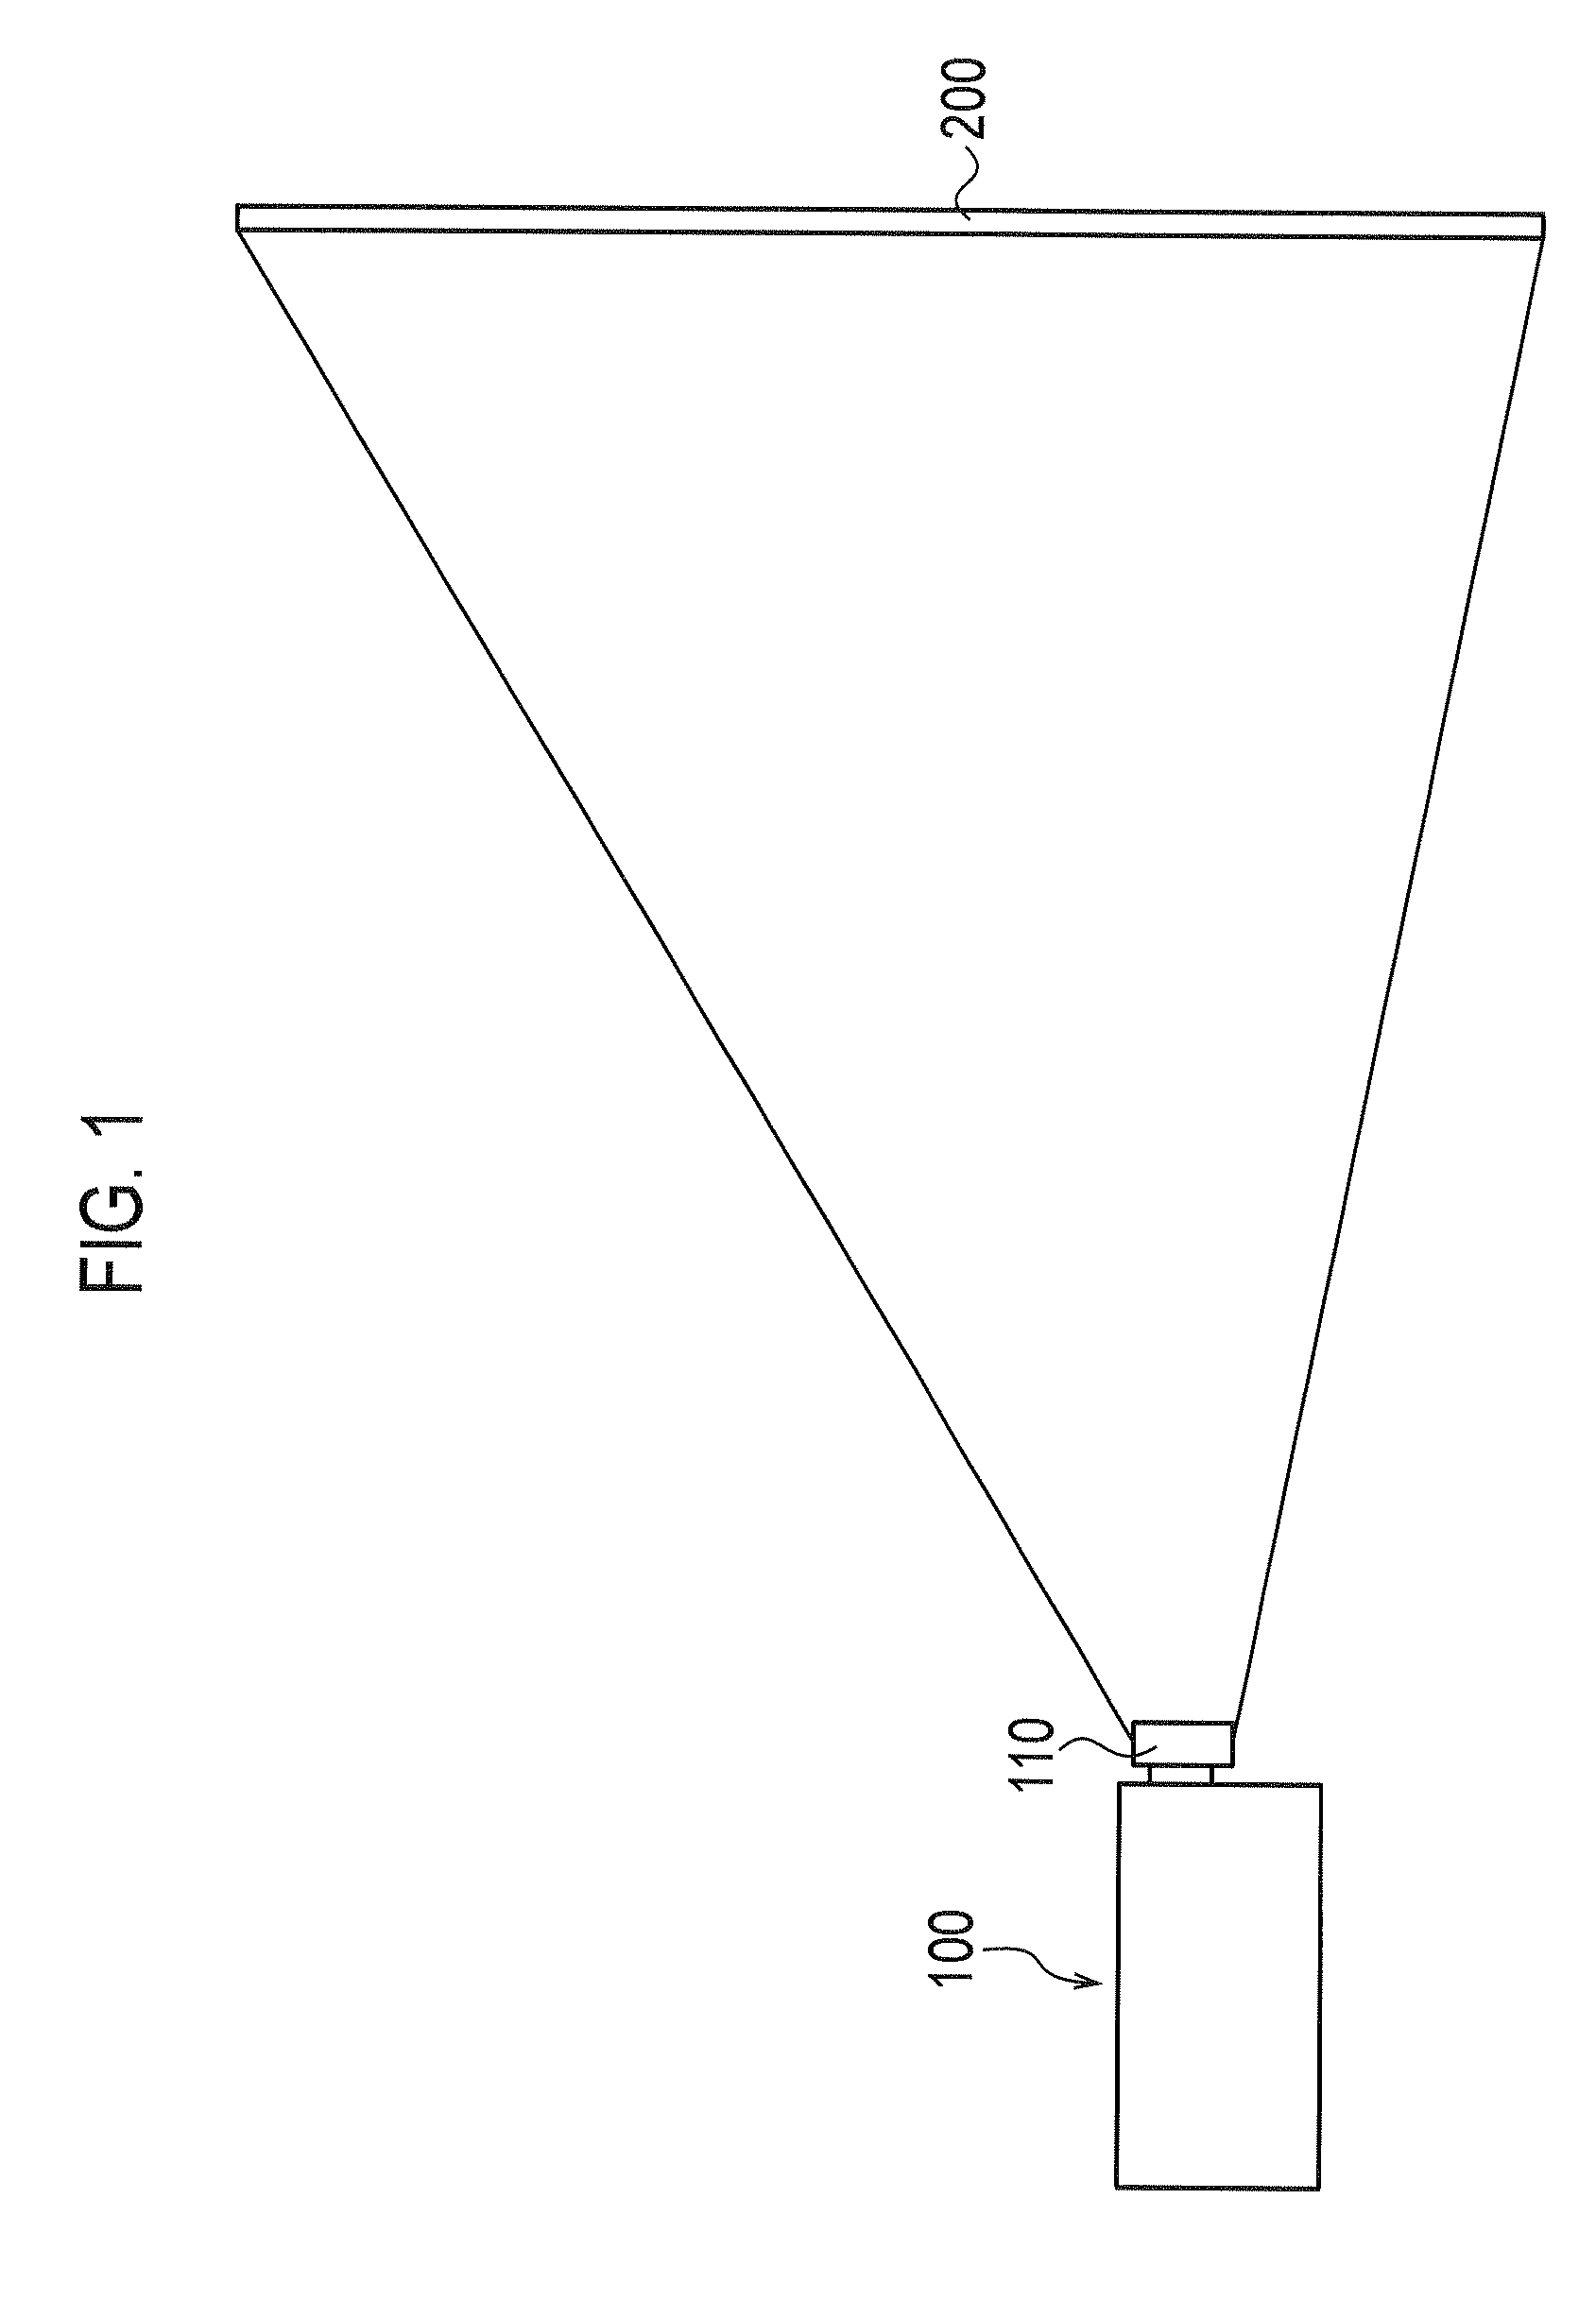 Image signal converting apparatus and image display apparatus